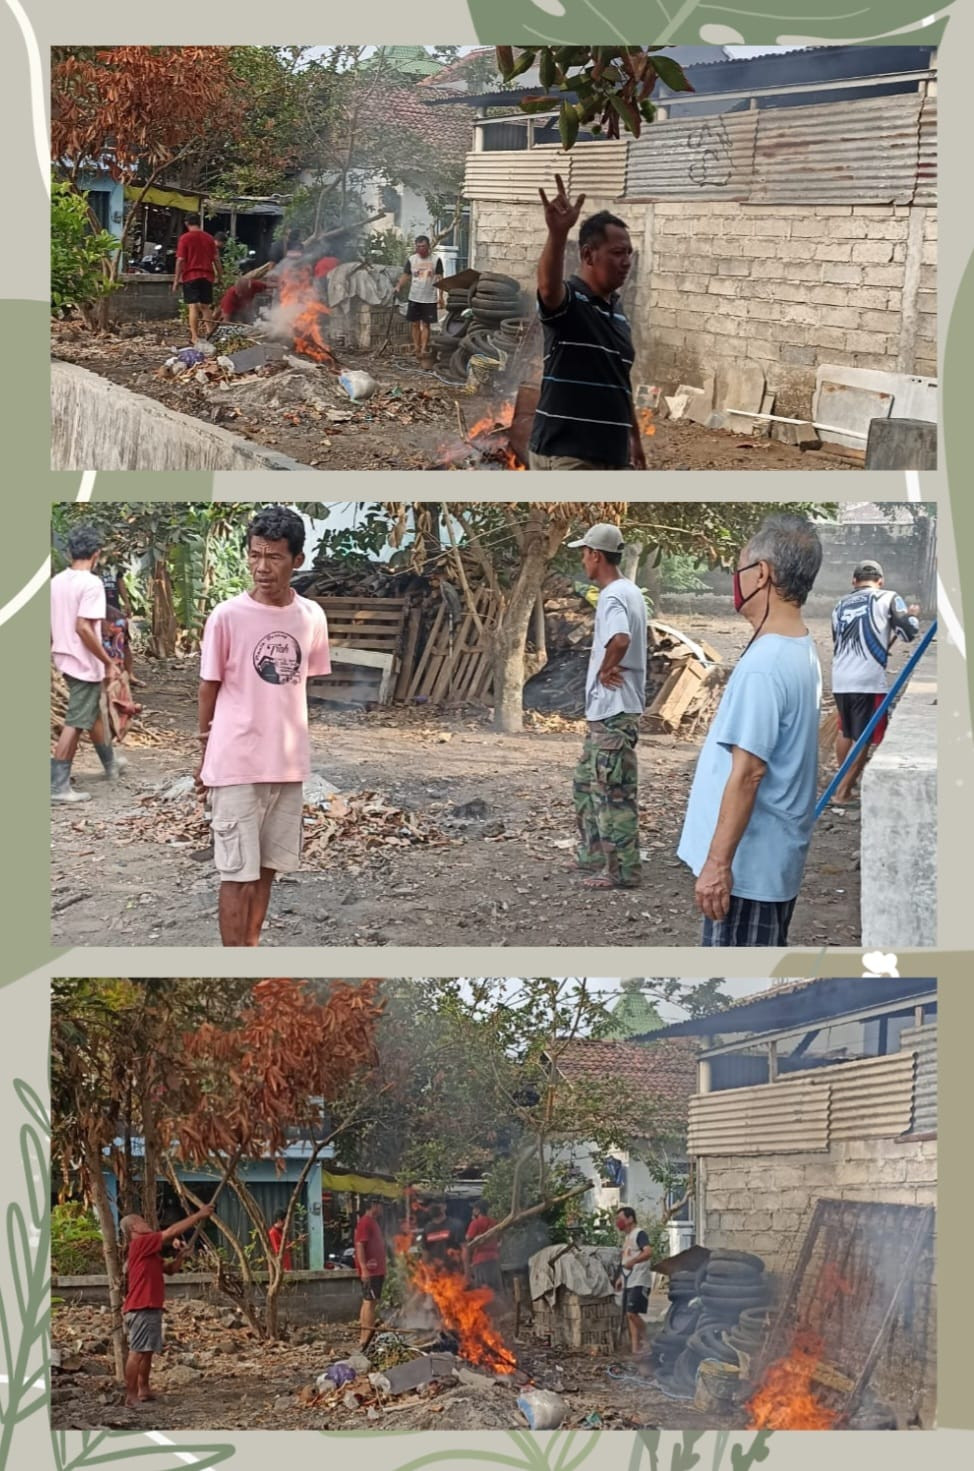 kegiatan kerja bakti bersih kampung bertempat di pekarangan rumah Bapak Tukijo salah satu warga RT05 (penyandang disabilitas)